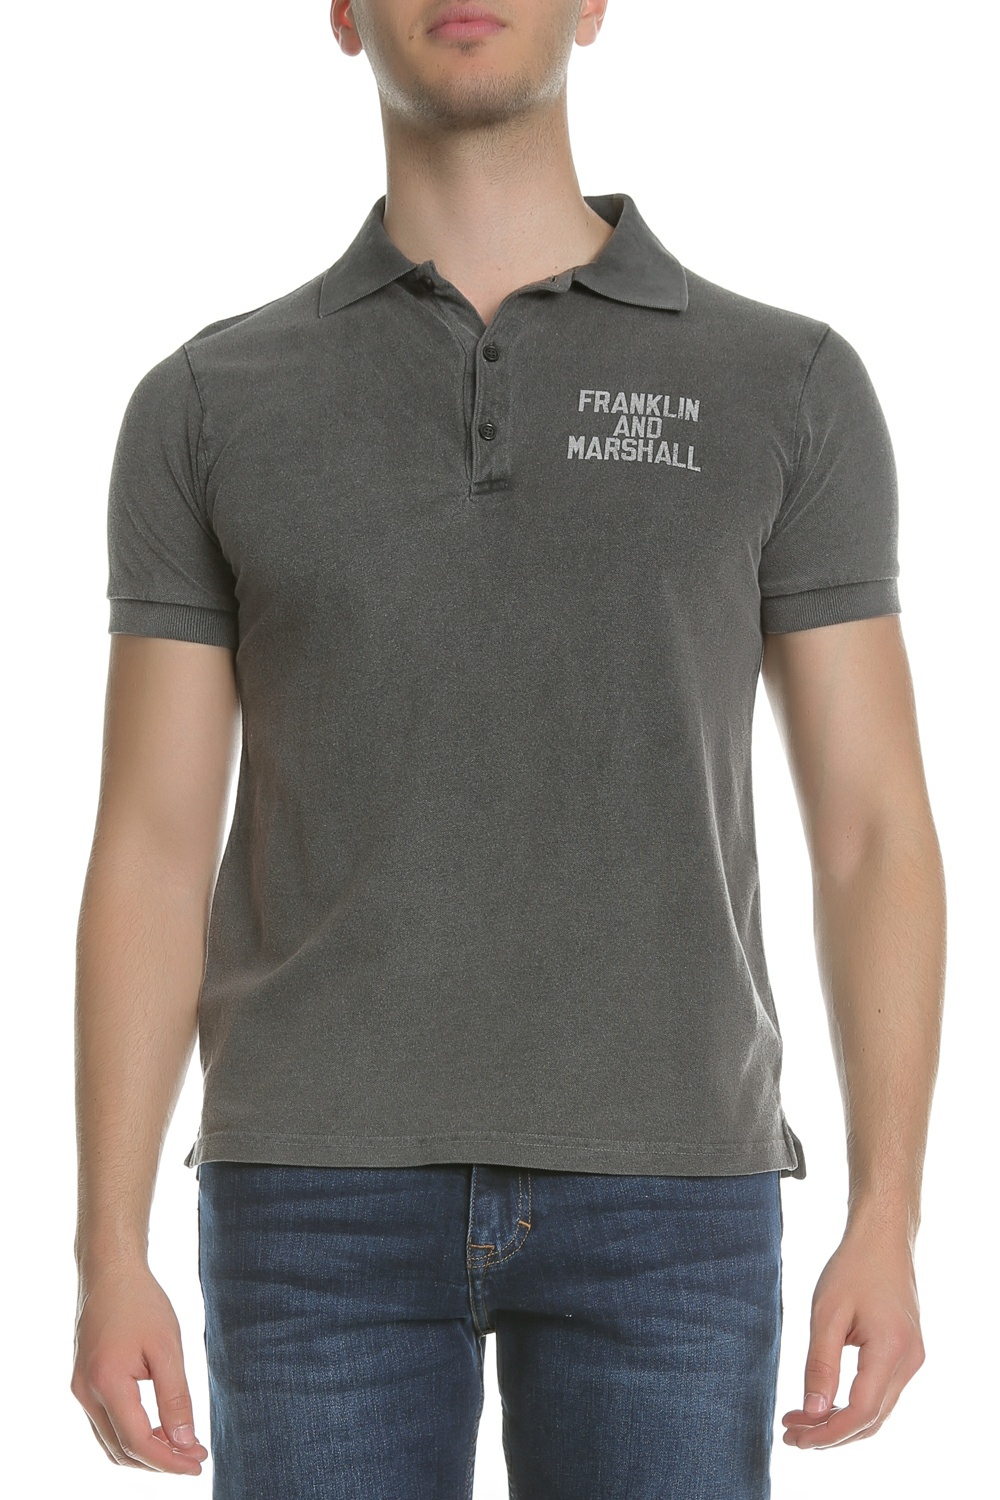 Ανδρικά/Ρούχα/Μπλούζες/Πόλο FRANKLIN & MARSHALL - Ανδρική πόλο μπλούζα FRANKLIN & MARSHALL ανθρακί